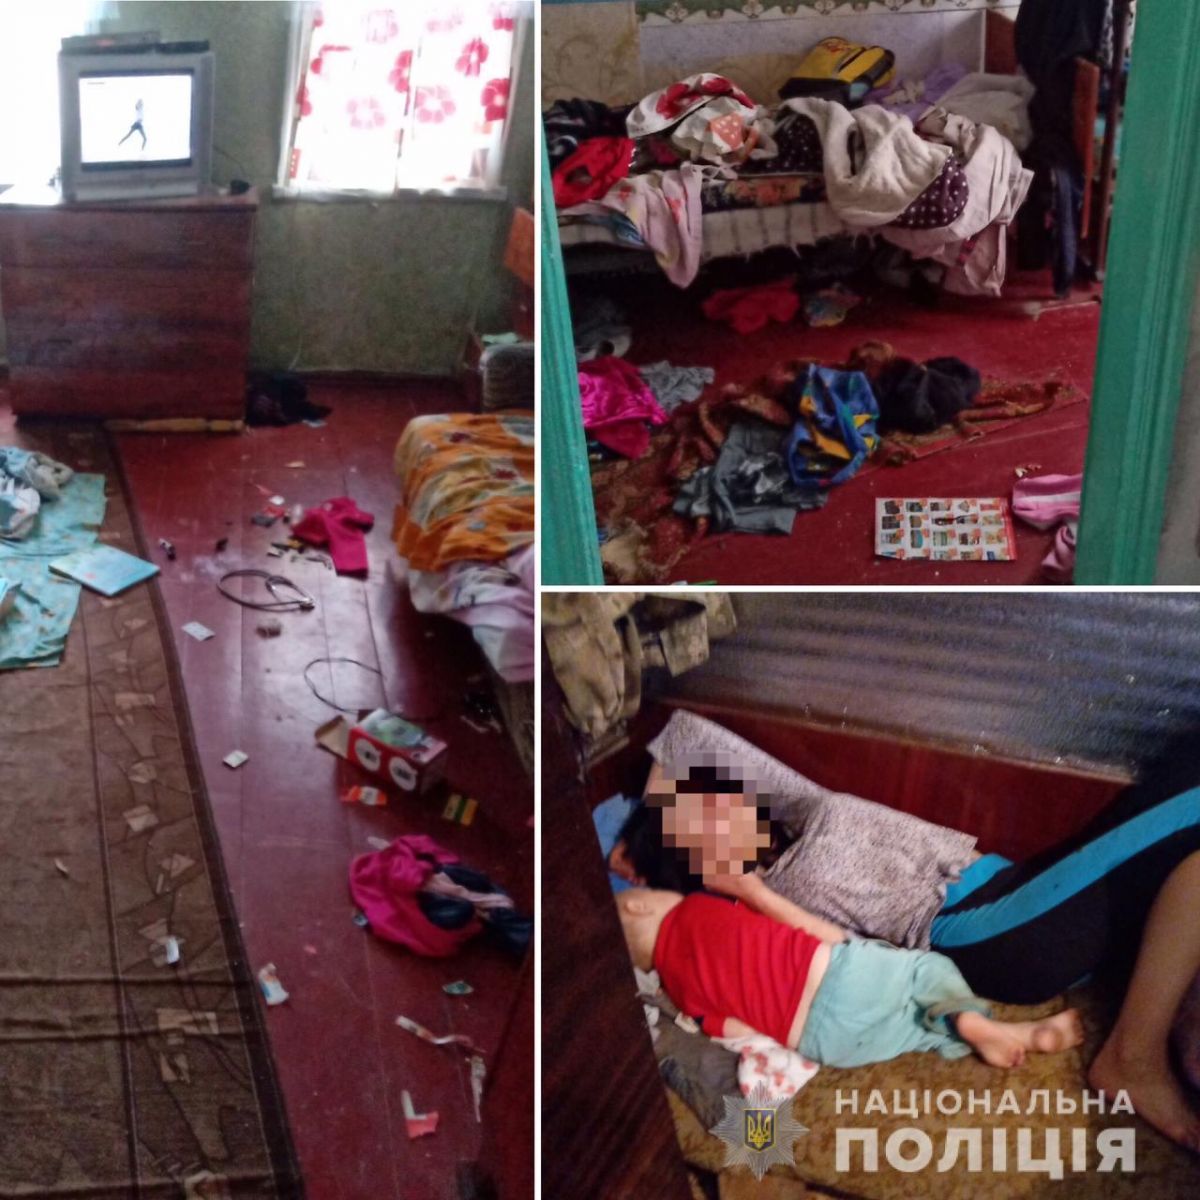 В Изюмском районе у пьяной матери полиция забрала четырех детей. Новости Харькова